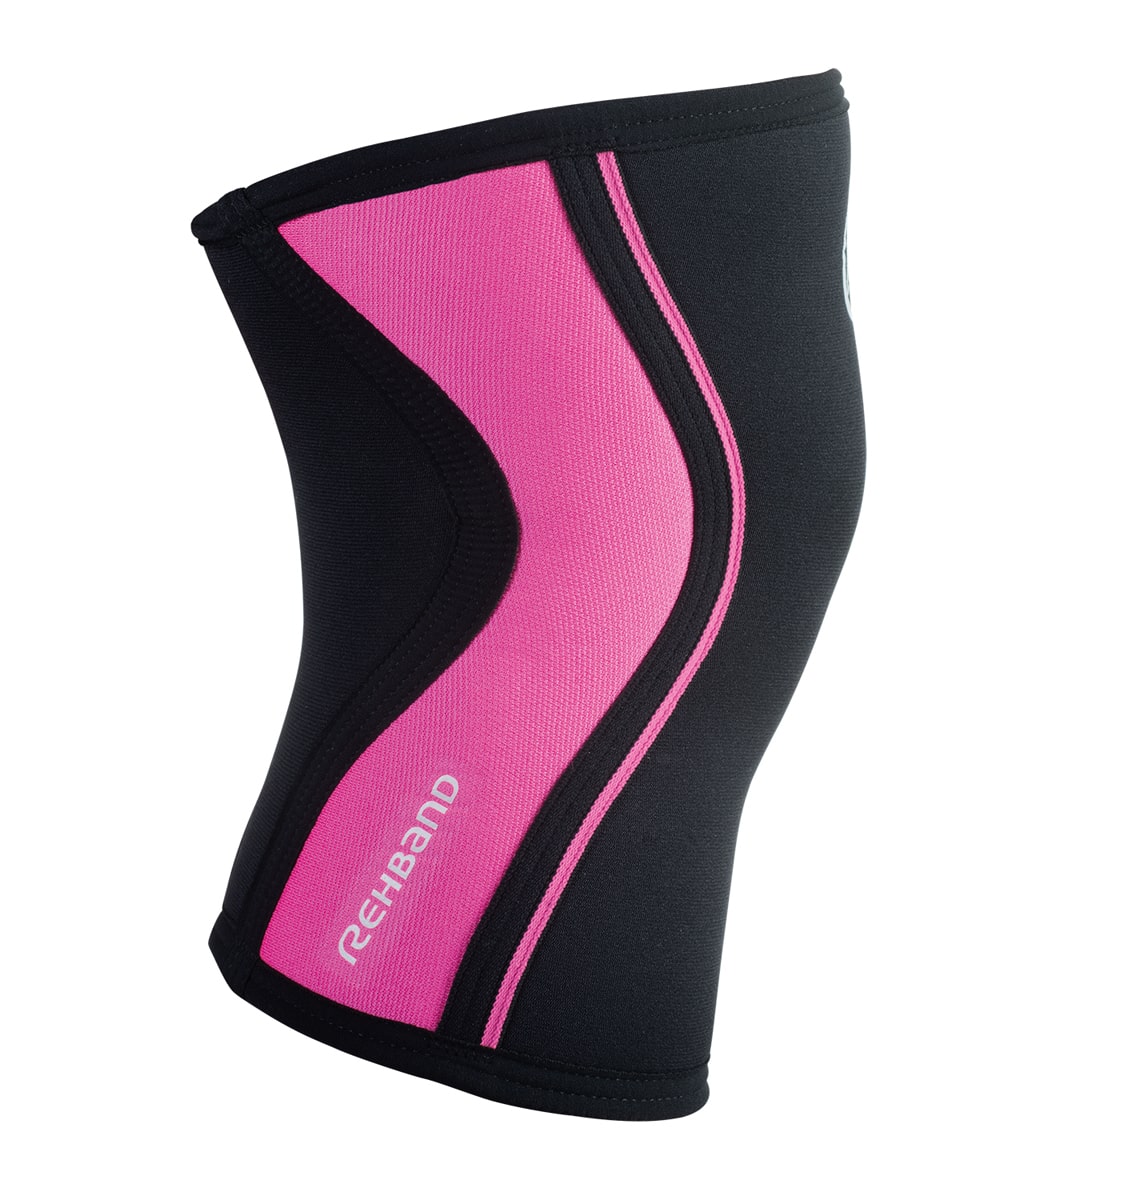 105333 - Rehband Rx Knee Sleeve - Black/Pink - 5mm - Side